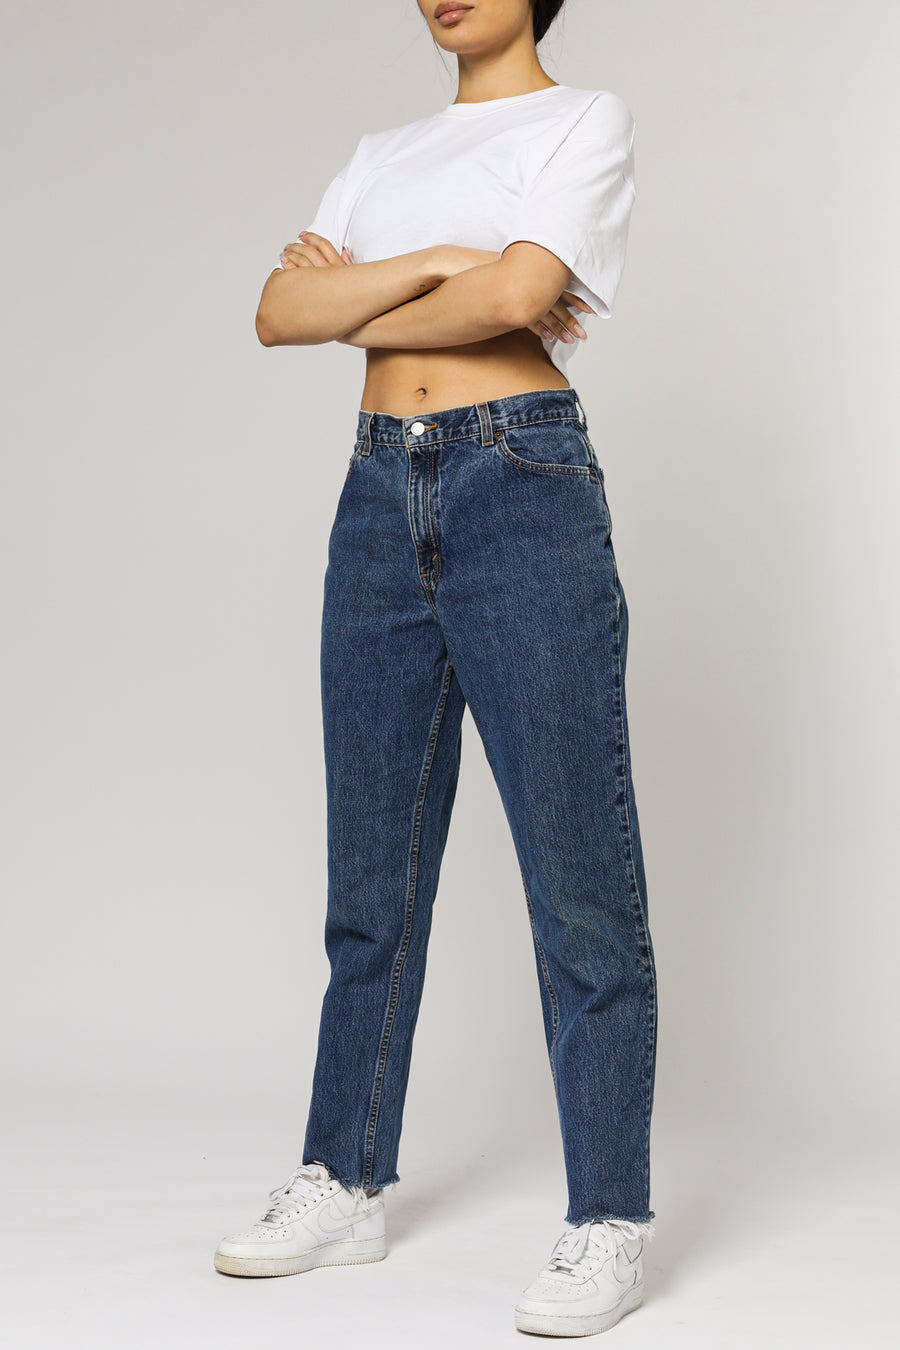 Vintage Levi's Jeans - W30